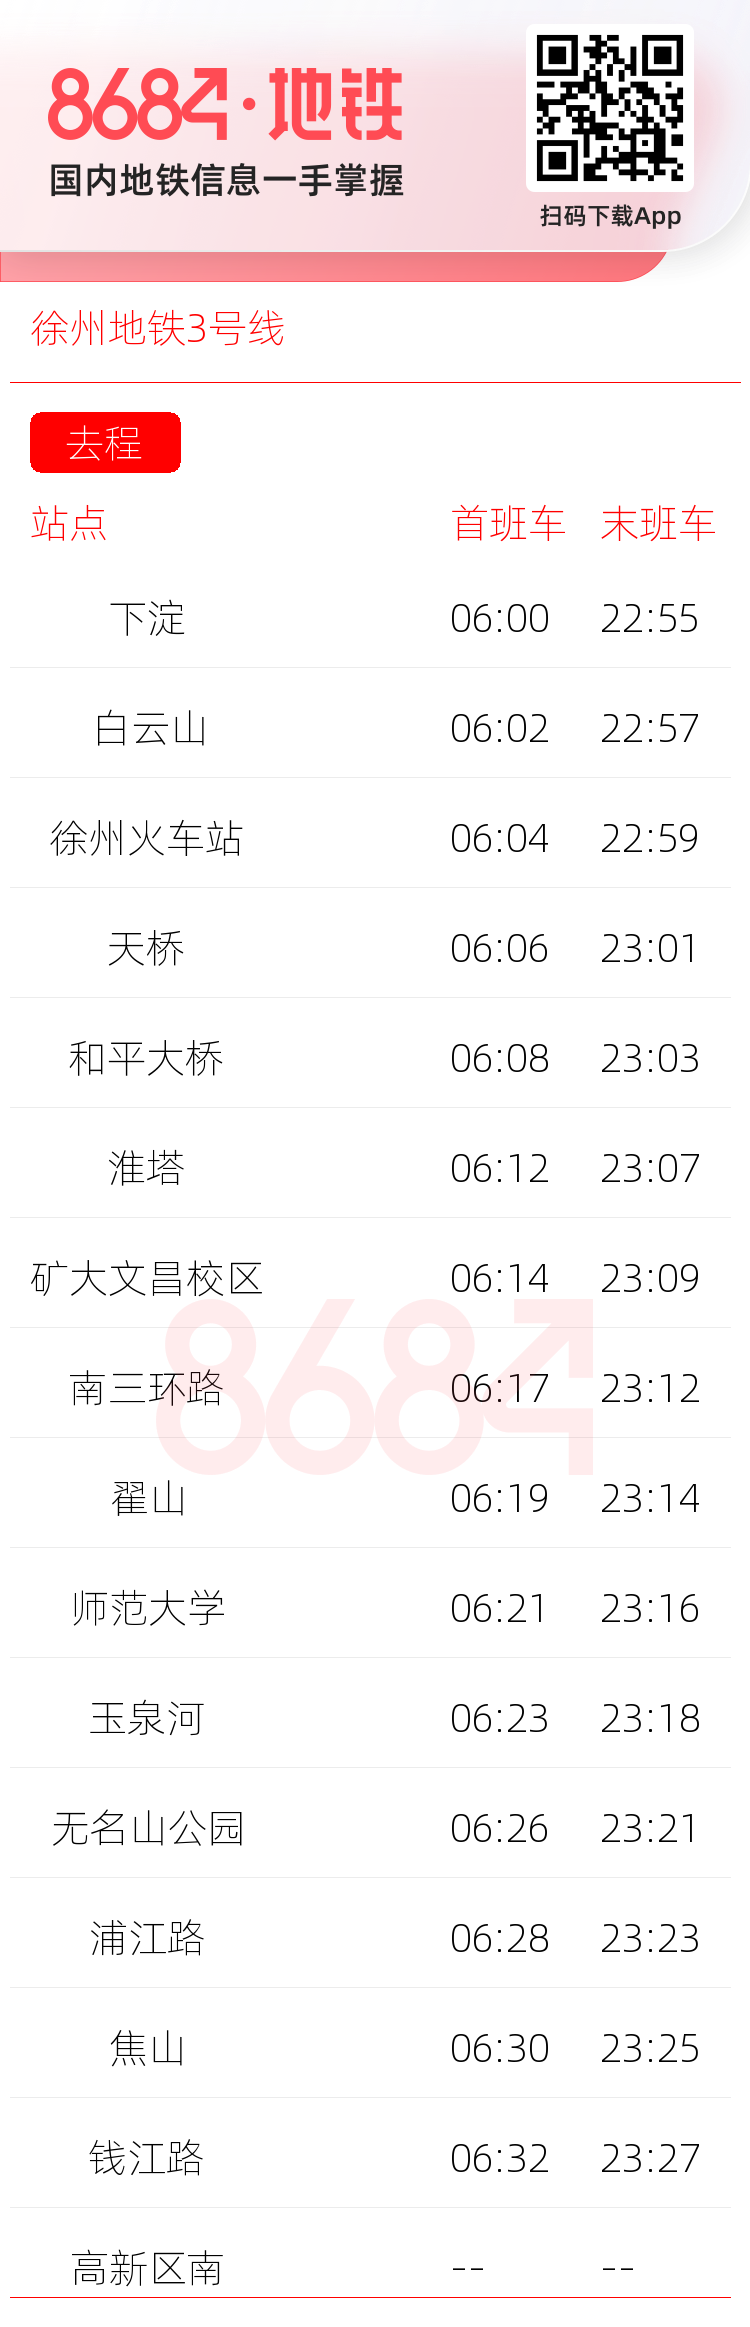 徐州地铁3号线运营时间表